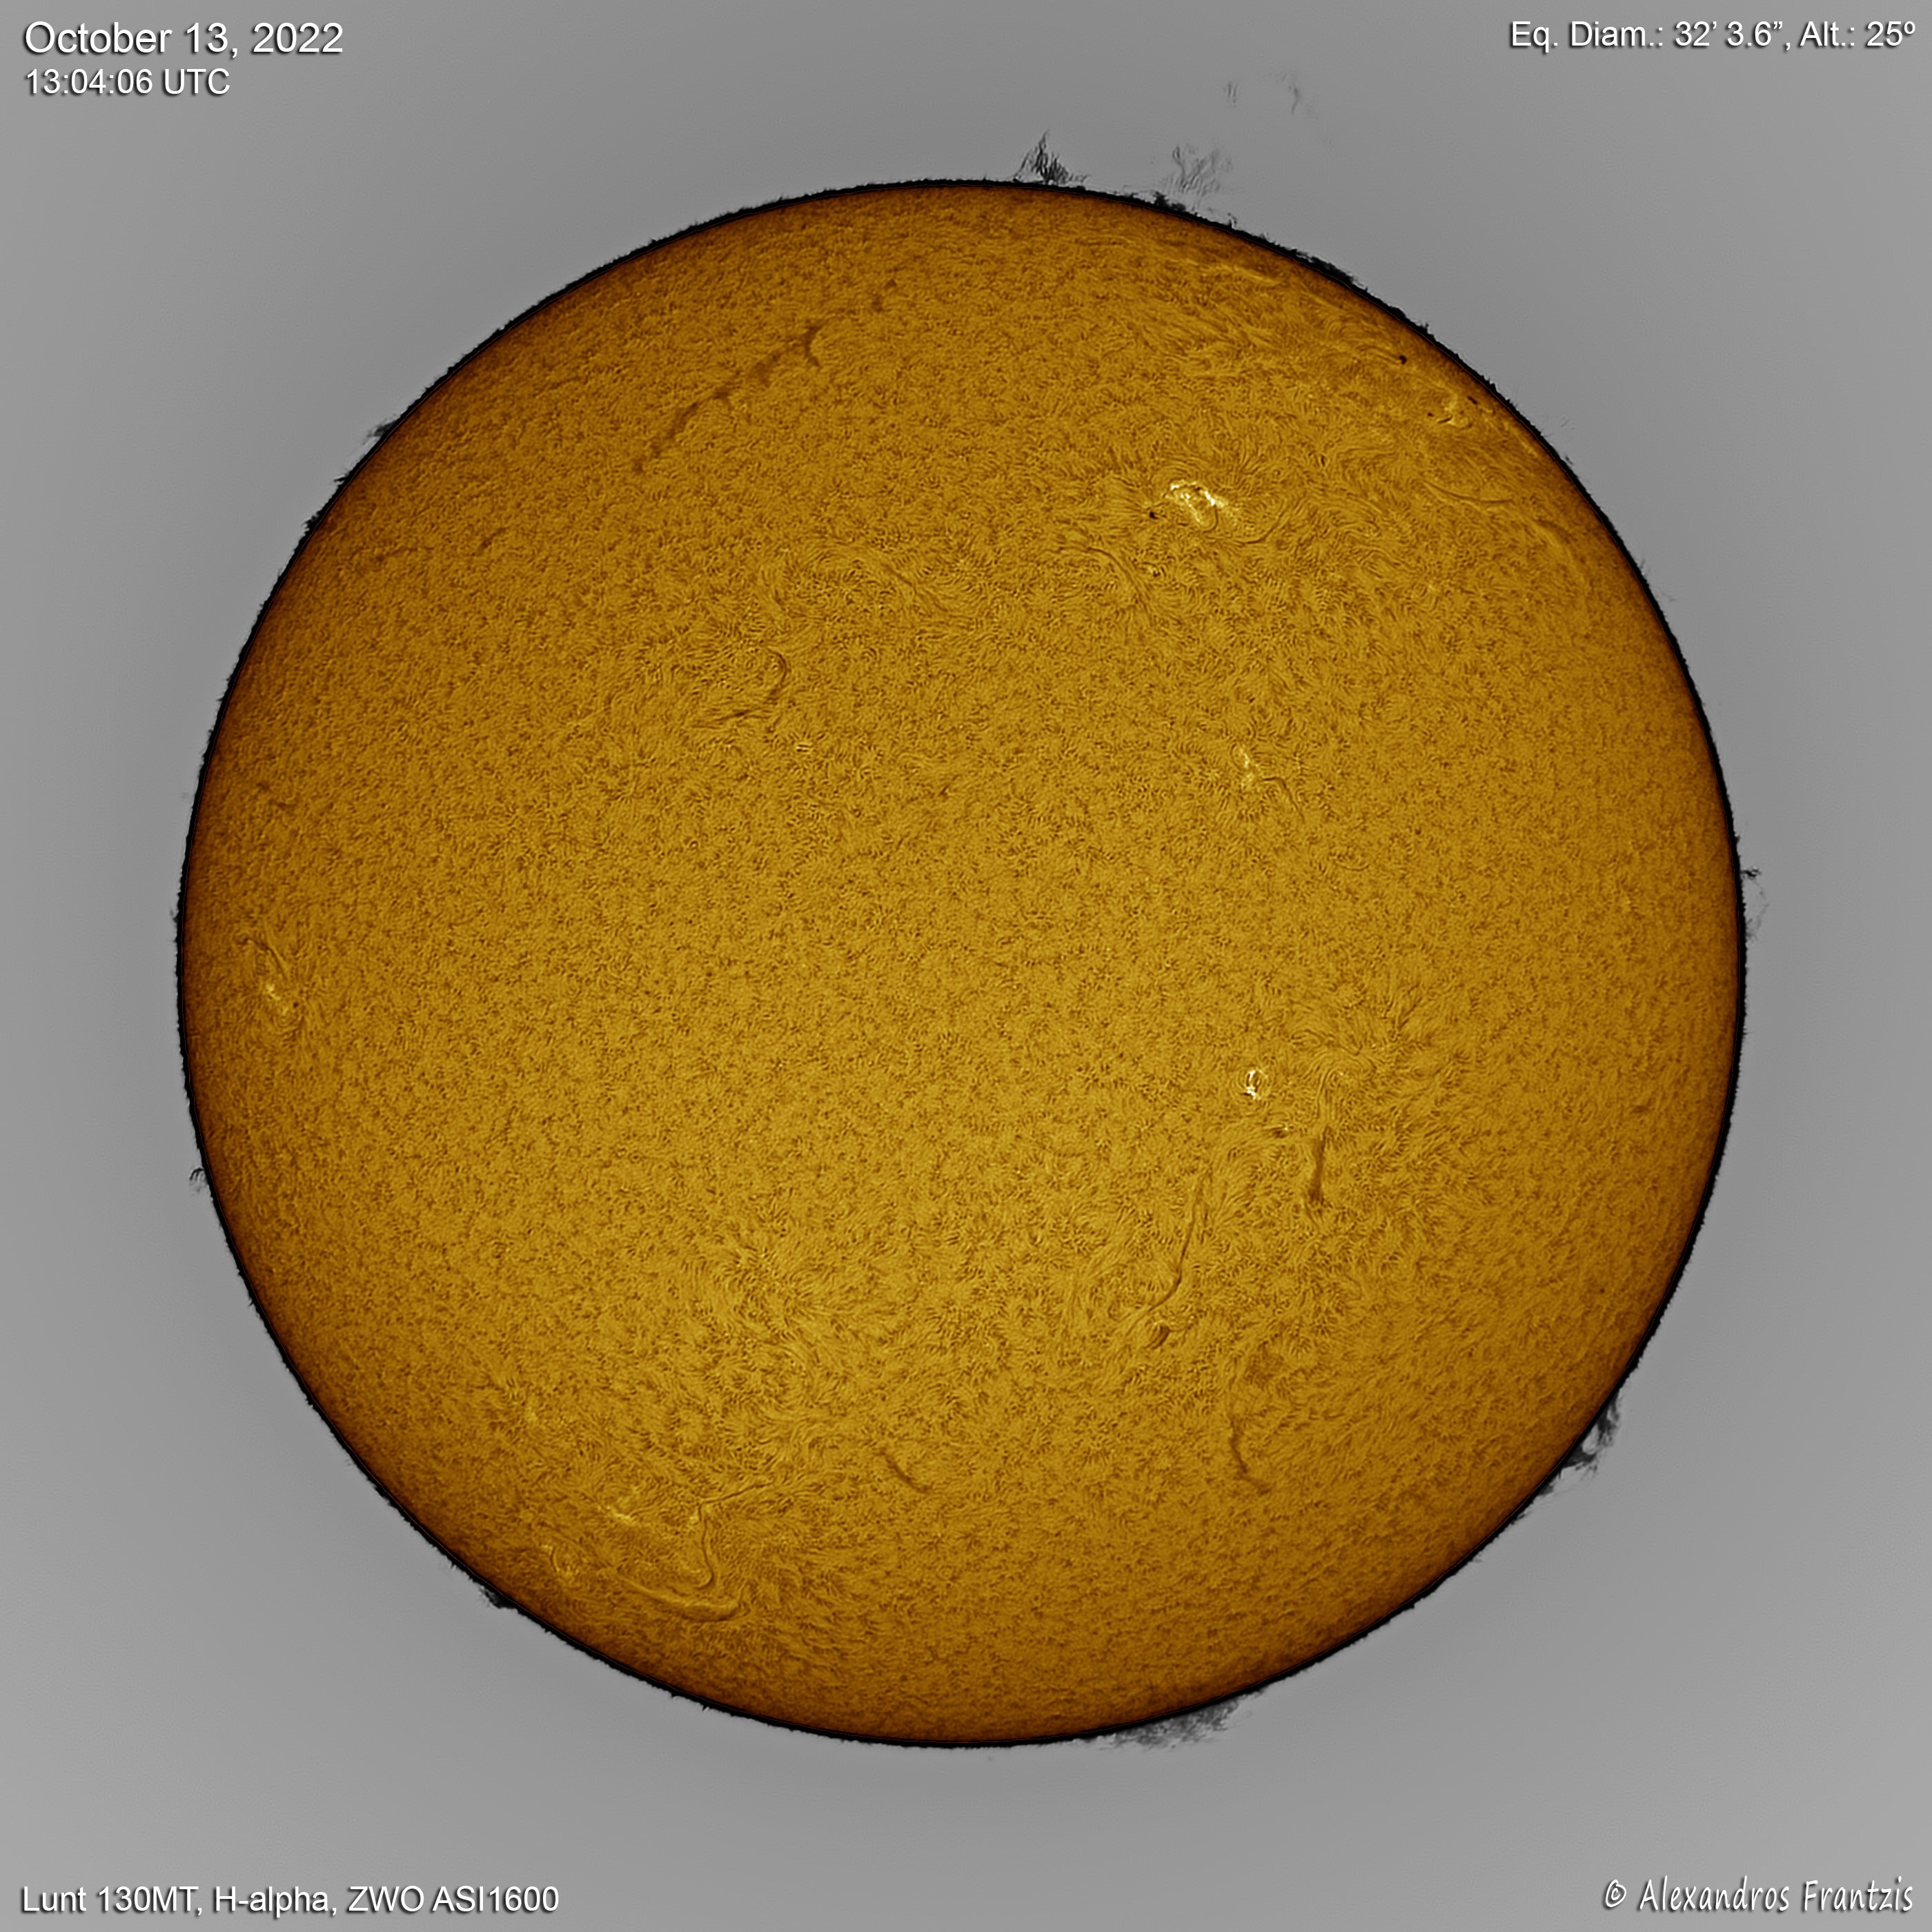 2022-10-13, Sun, Lunt130MT, H-alpha, ASI1600, 13_04_06 UTC